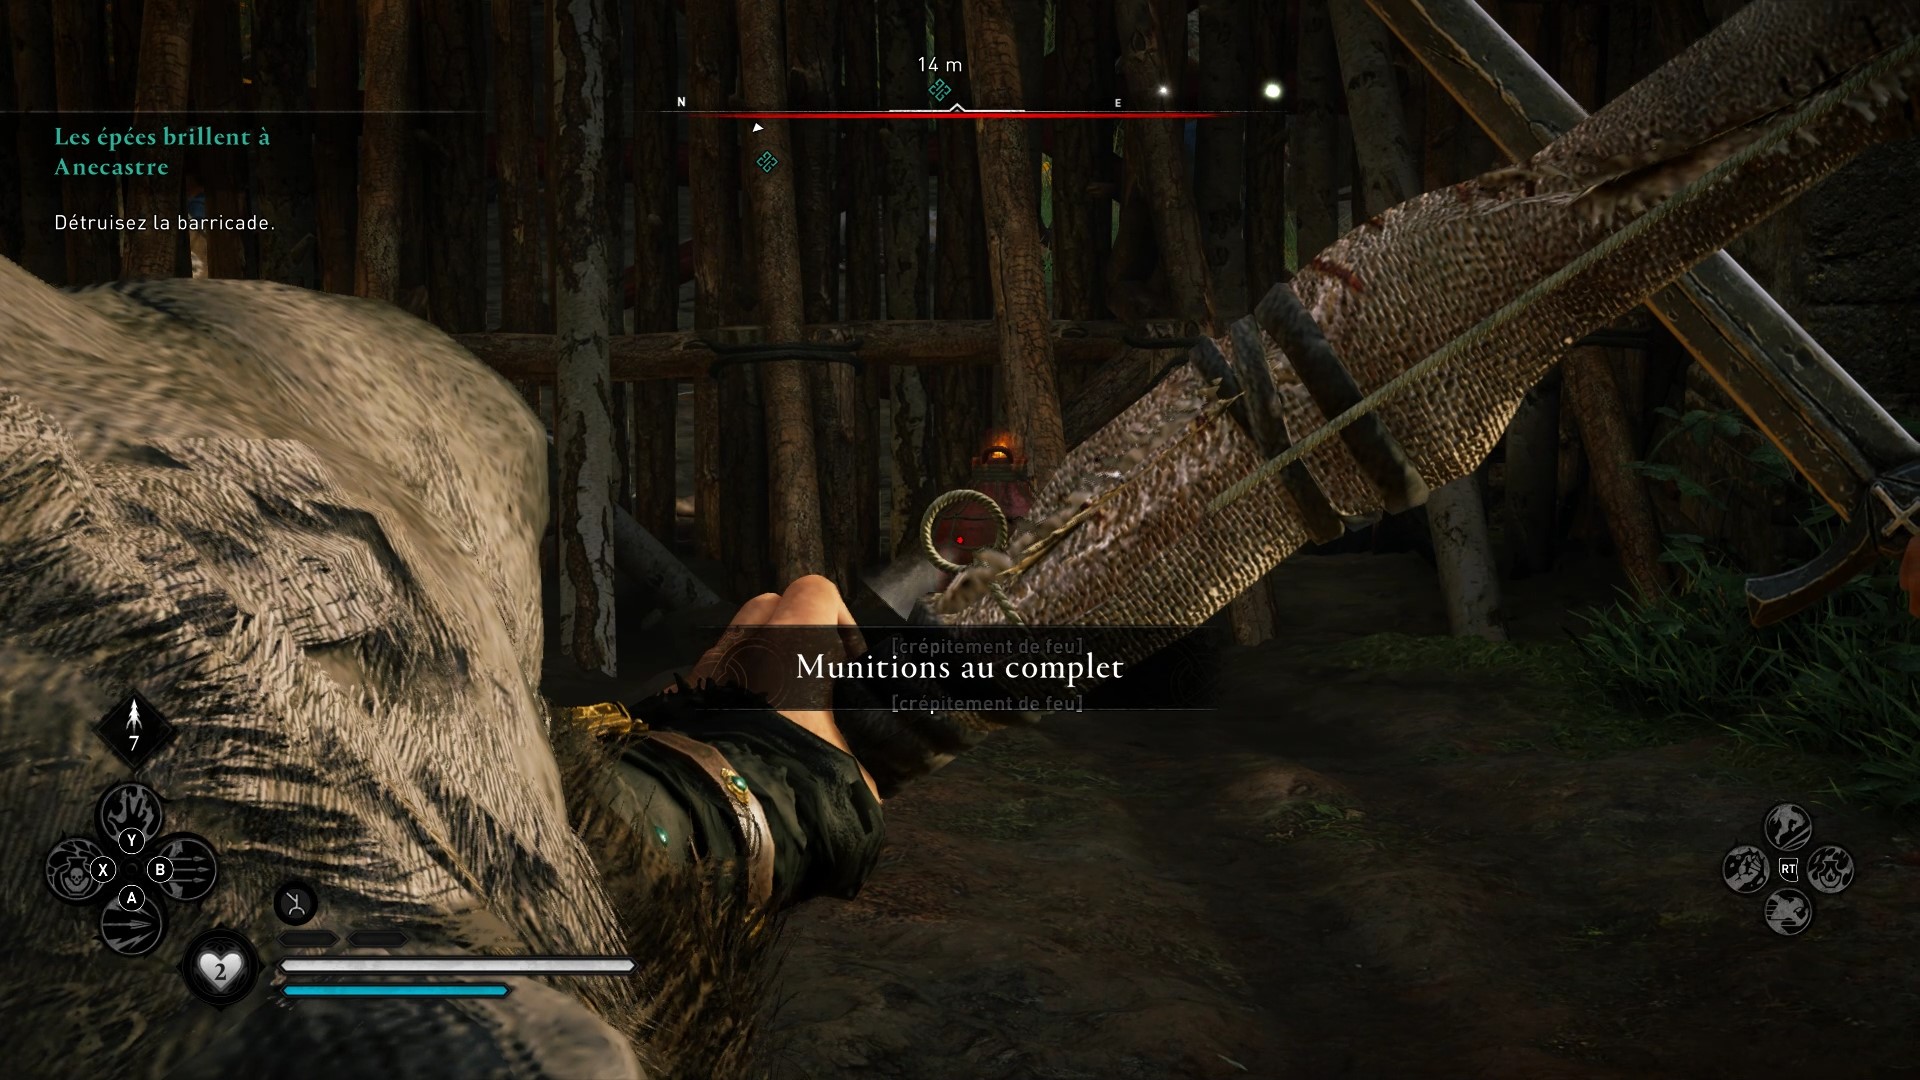 Les épées brillent à Anecestre Assassin's Creed Valhalla